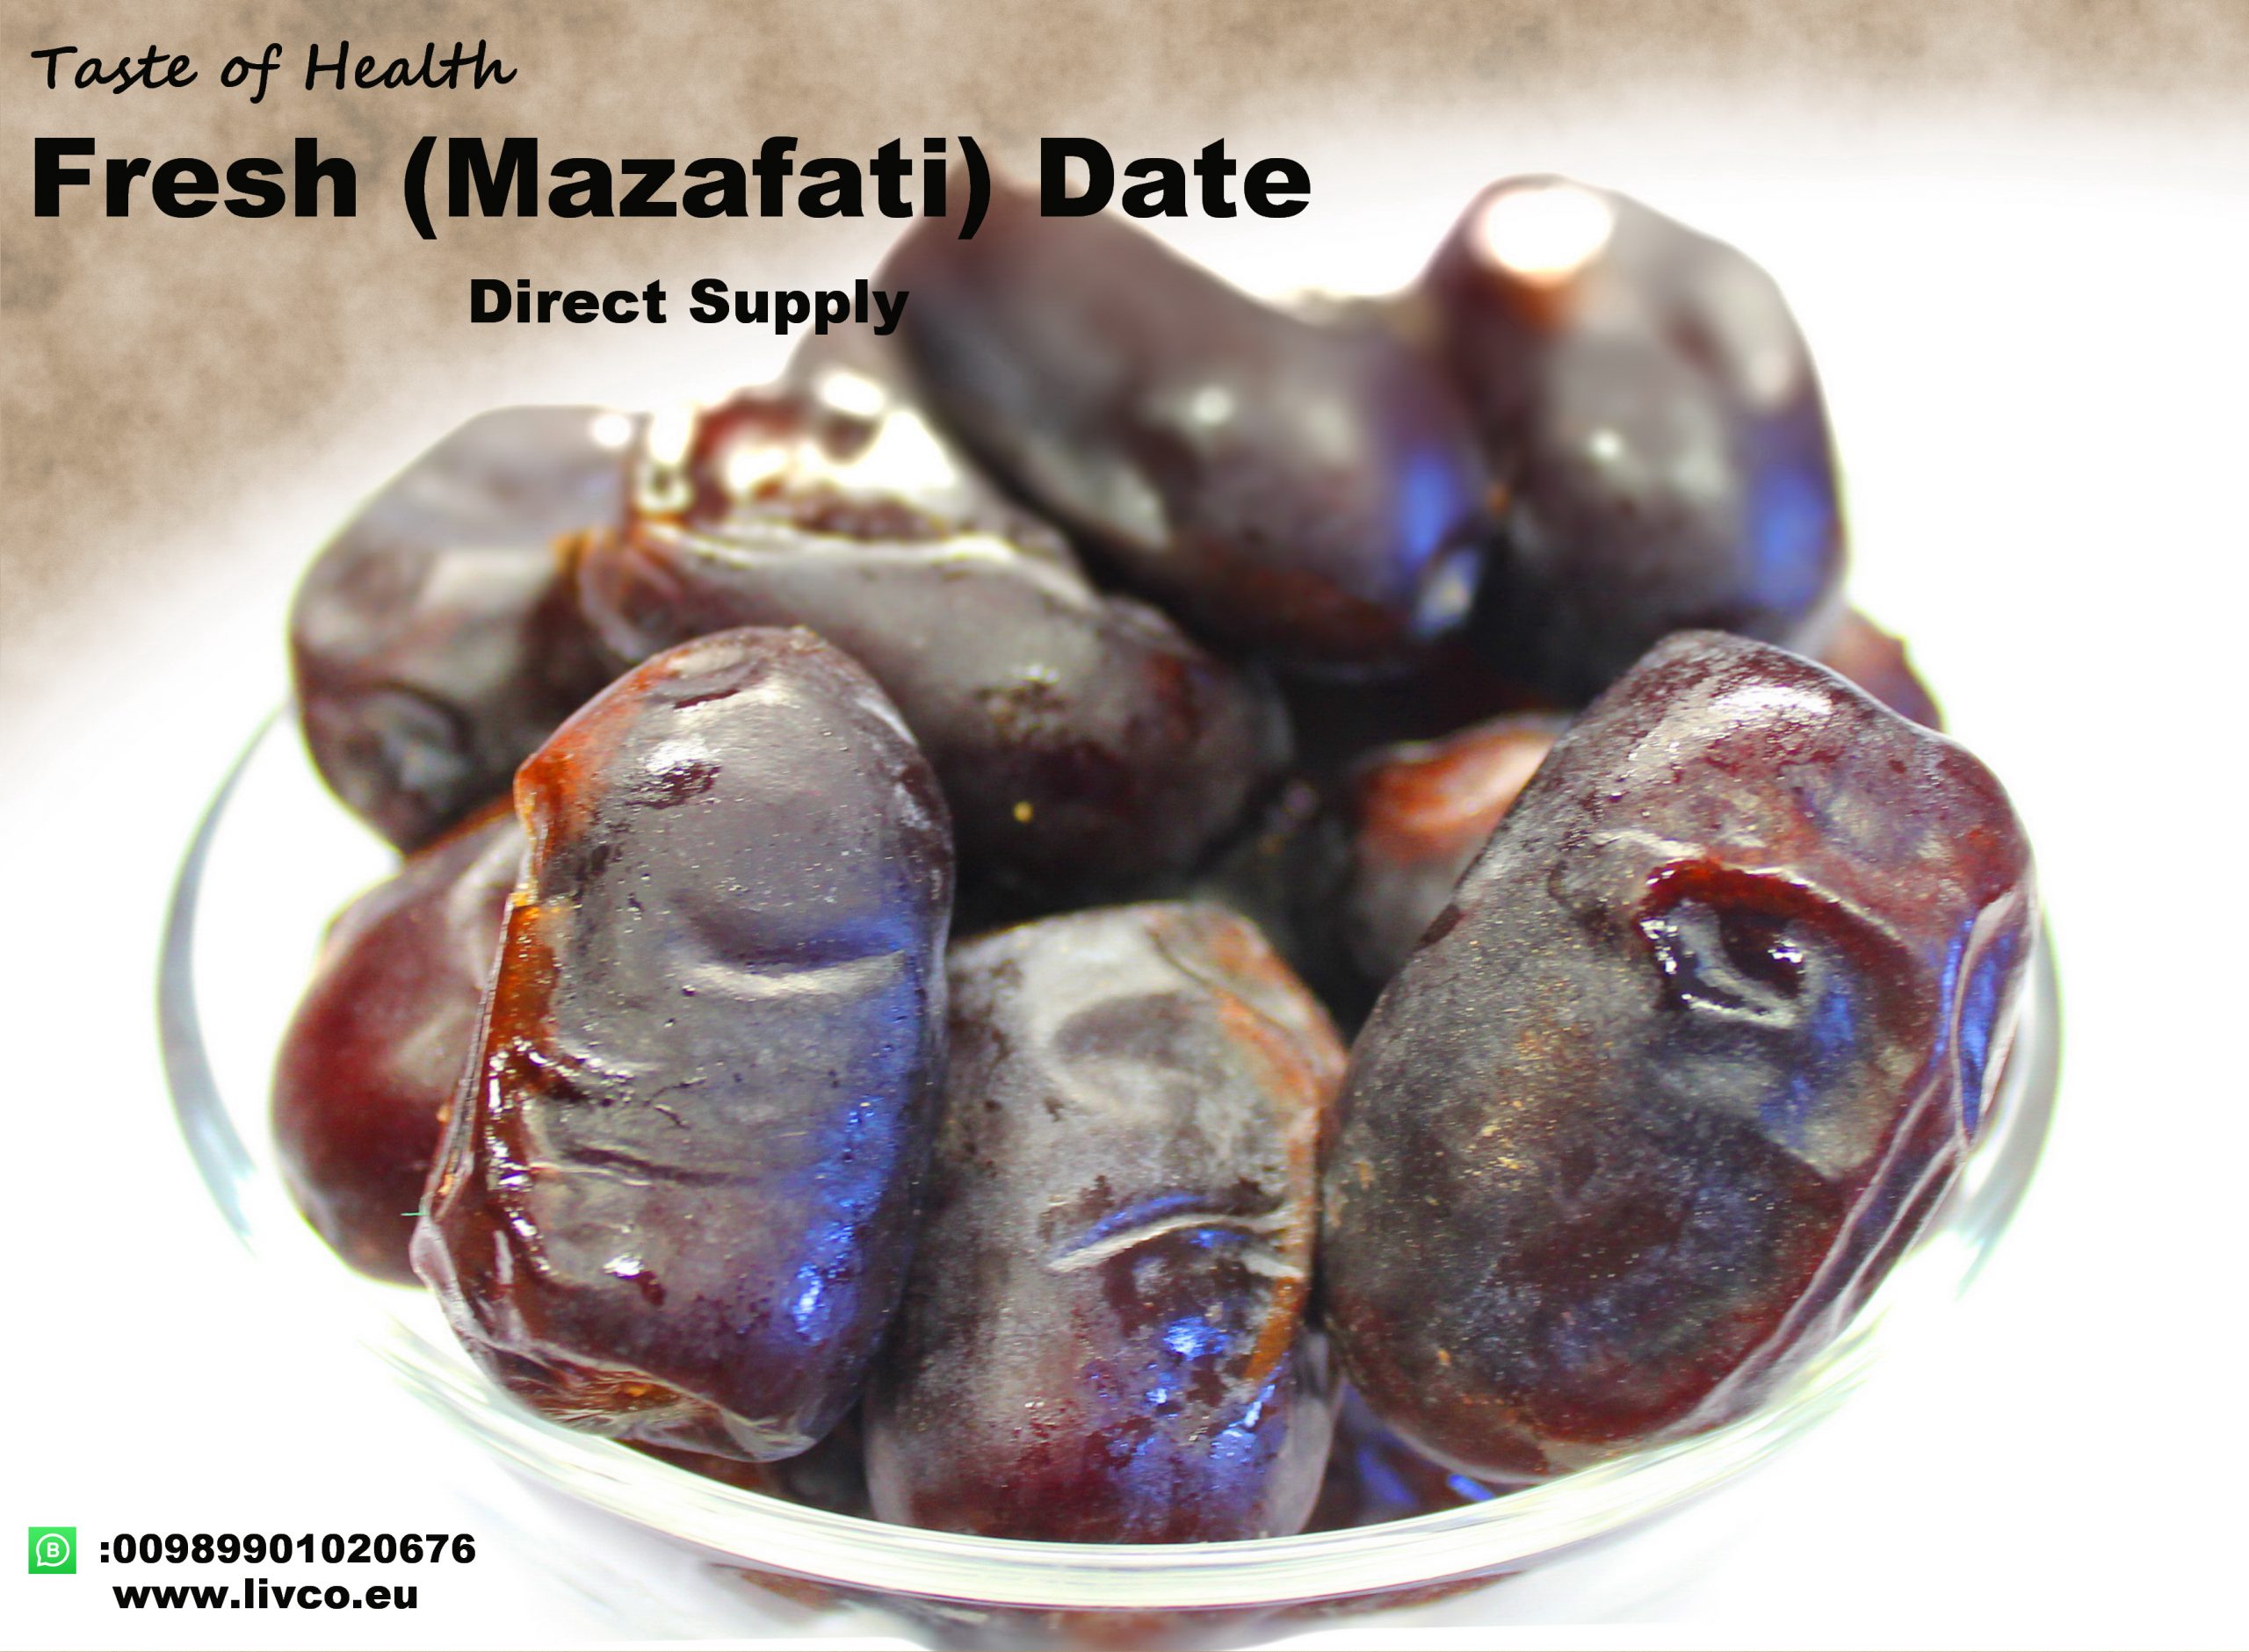 Mazafati Dates manufacturer,www.livco.eu